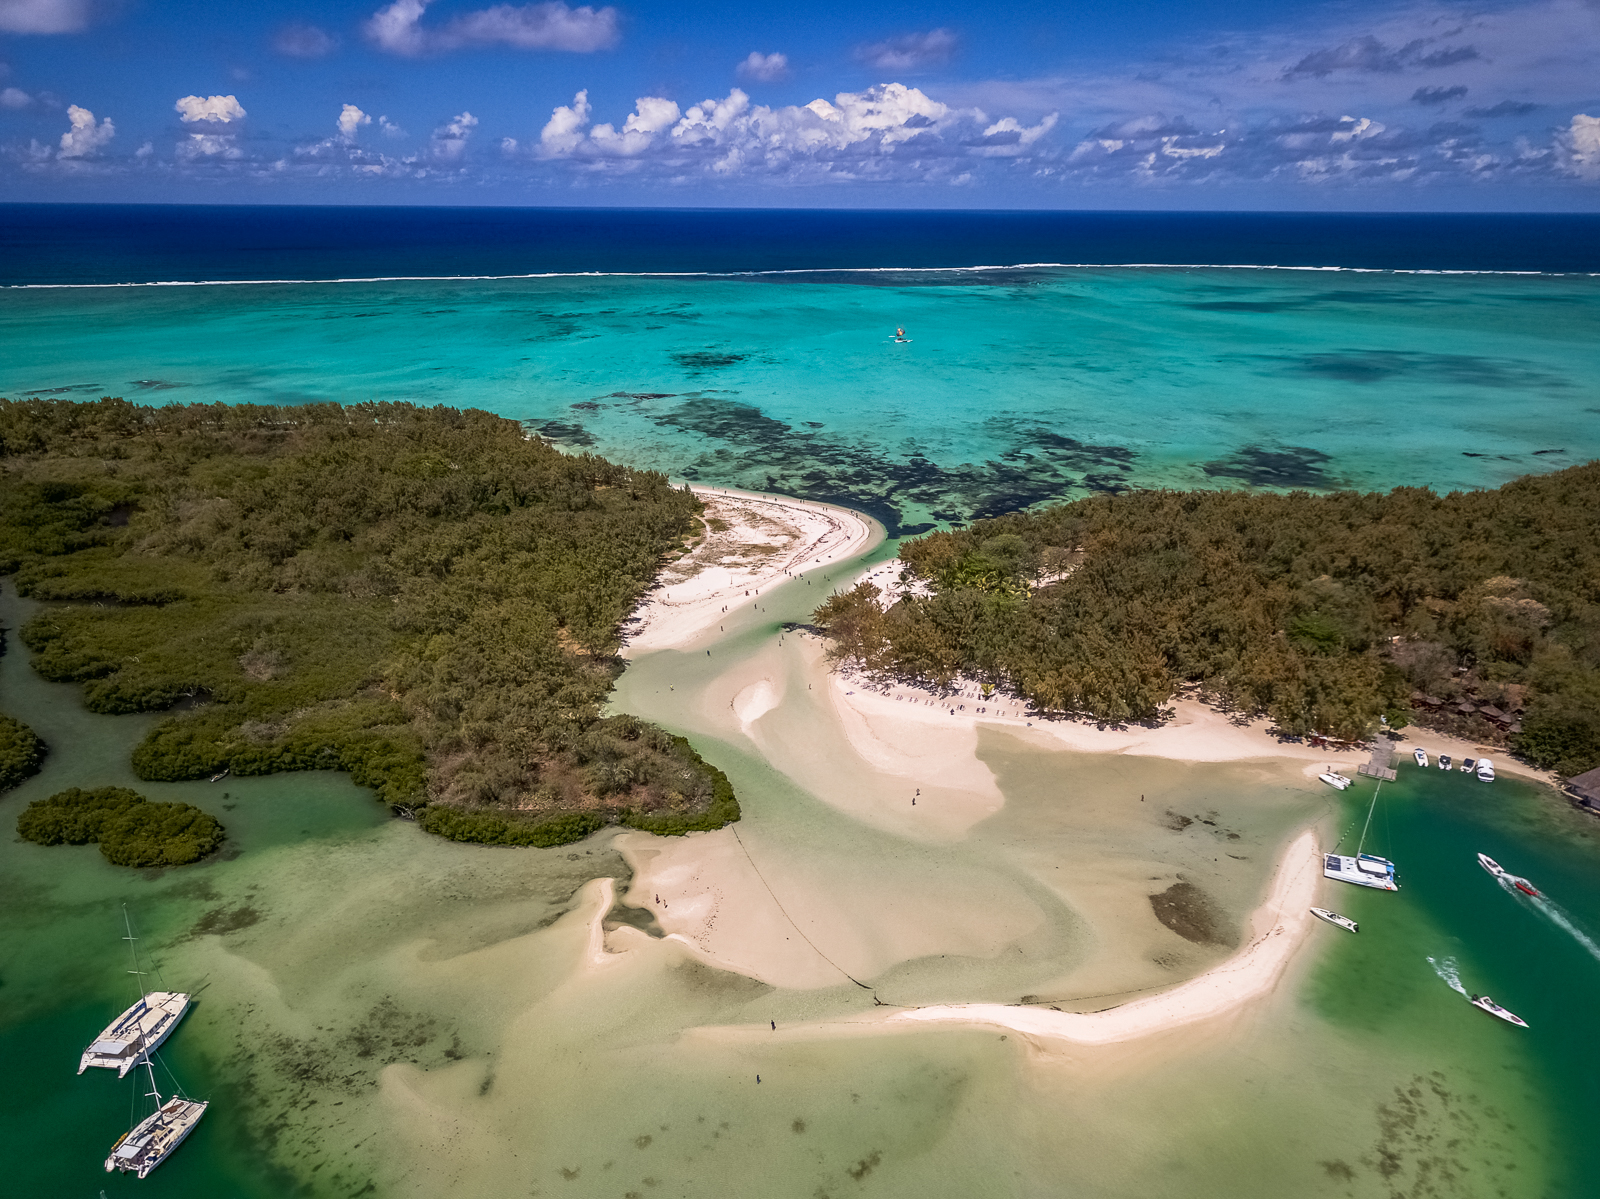 Drone shot of Ile Aux Cerfs island in Mauritius